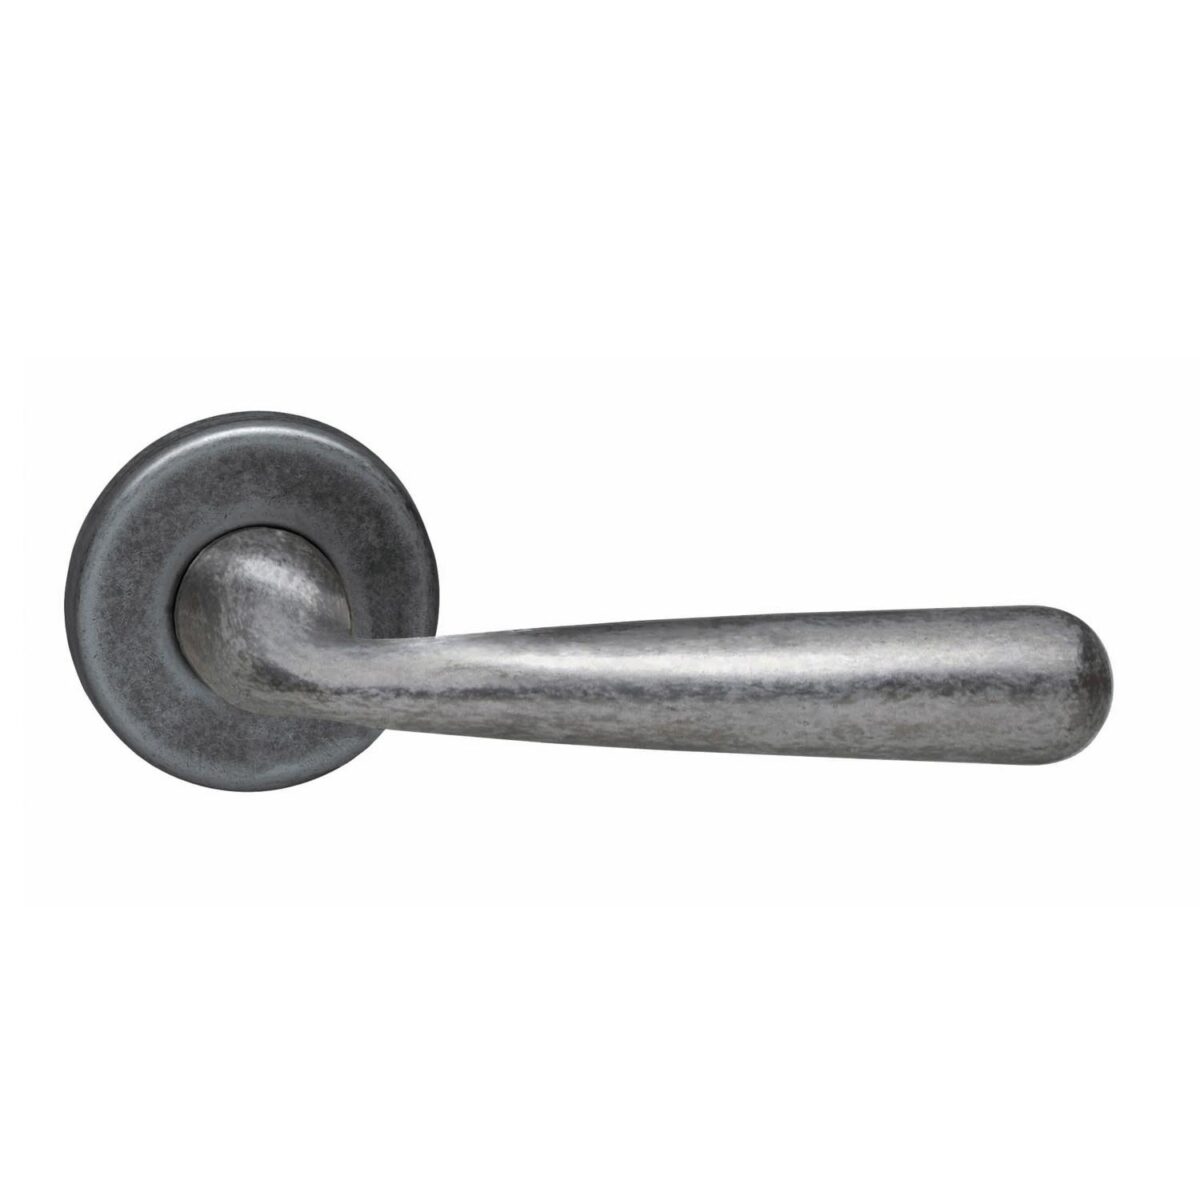 Intersteel_door handle-on-round-roset_Old-gray-DEURBESLAG-EXPERT, door handle Yvonne, old gray, on rosette